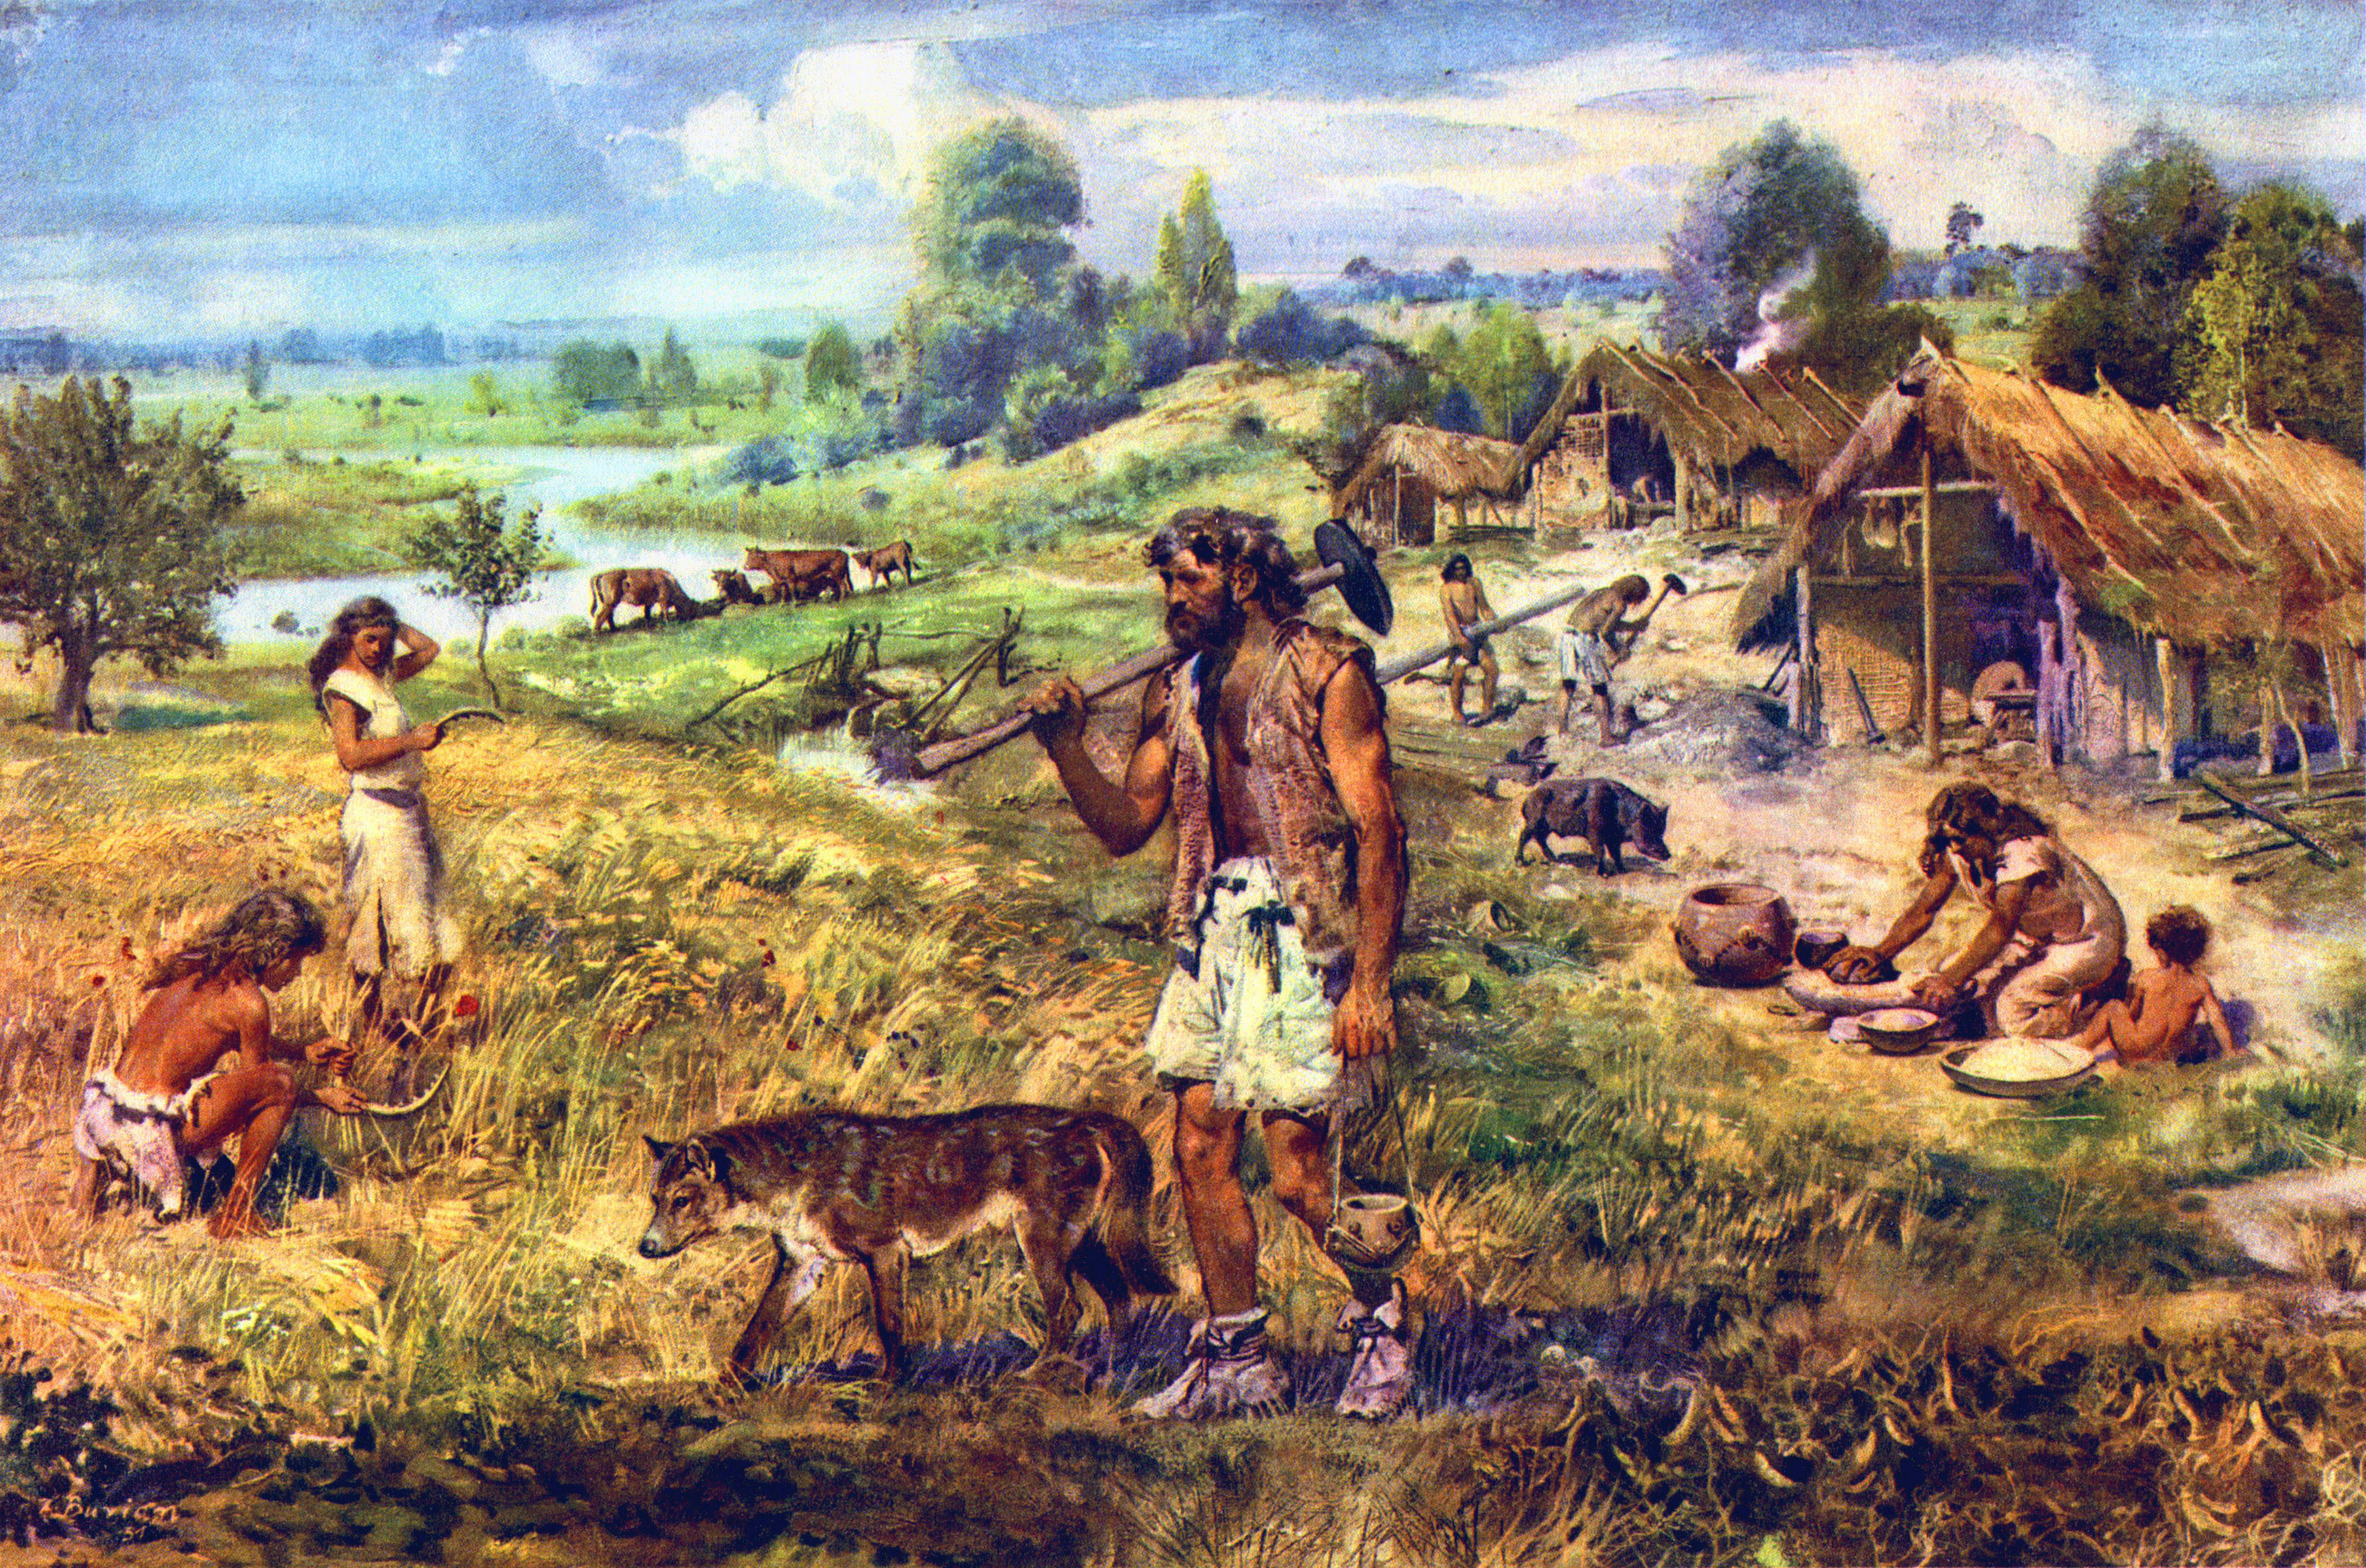 Afbeeldingen Zdenek Burian A neolithic settlement schilderij 3612x2394 Schilderkunst